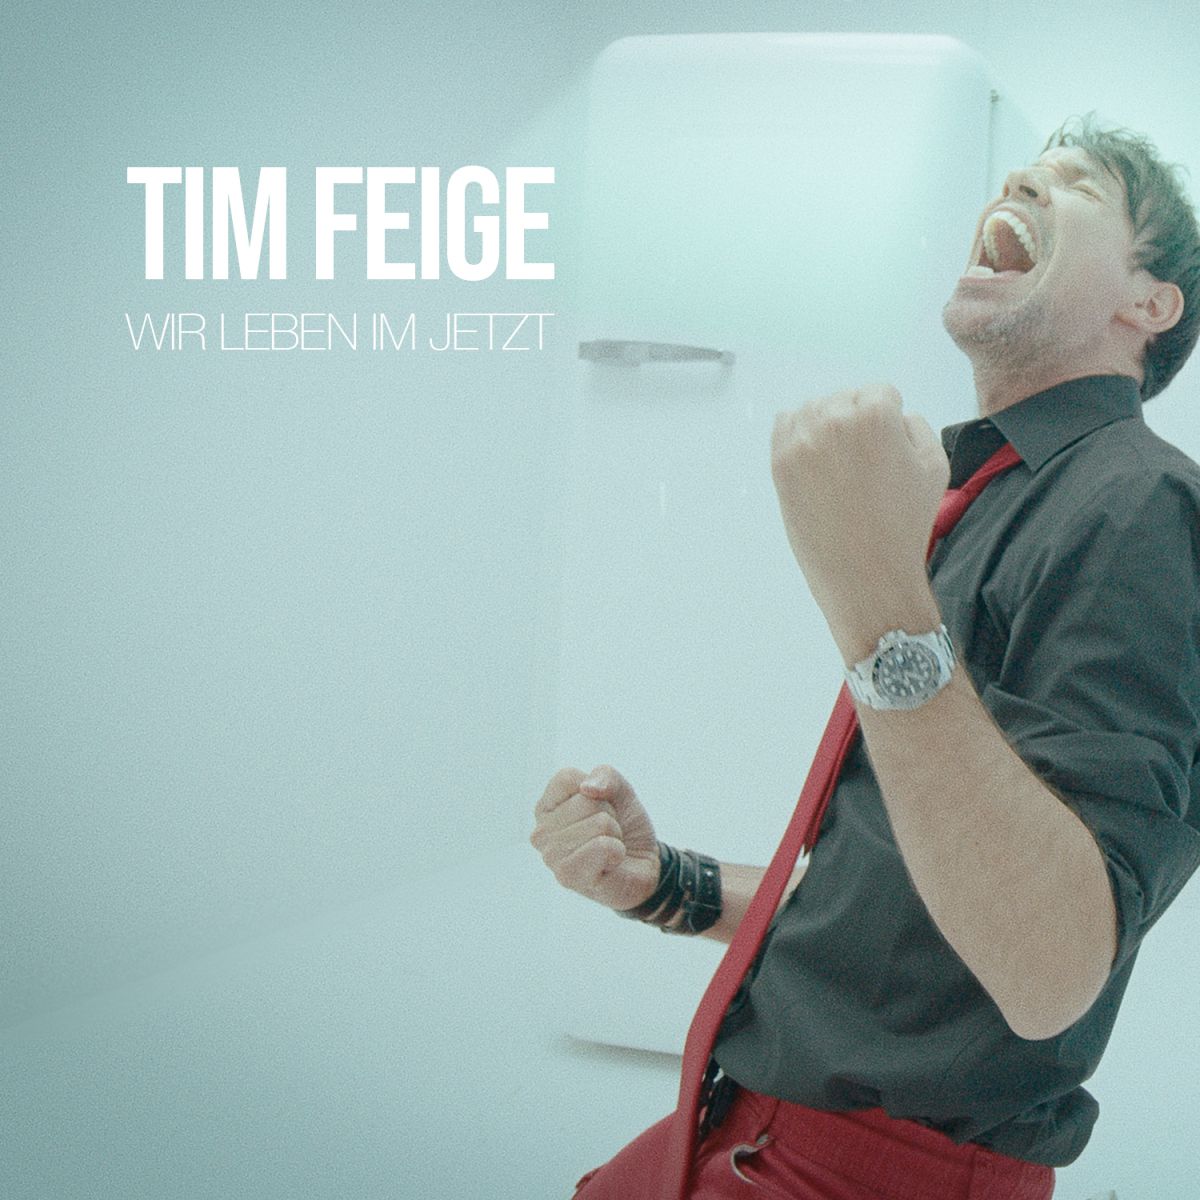 Tim Feige - Wir leben im jetzt - Frontcover.jpg